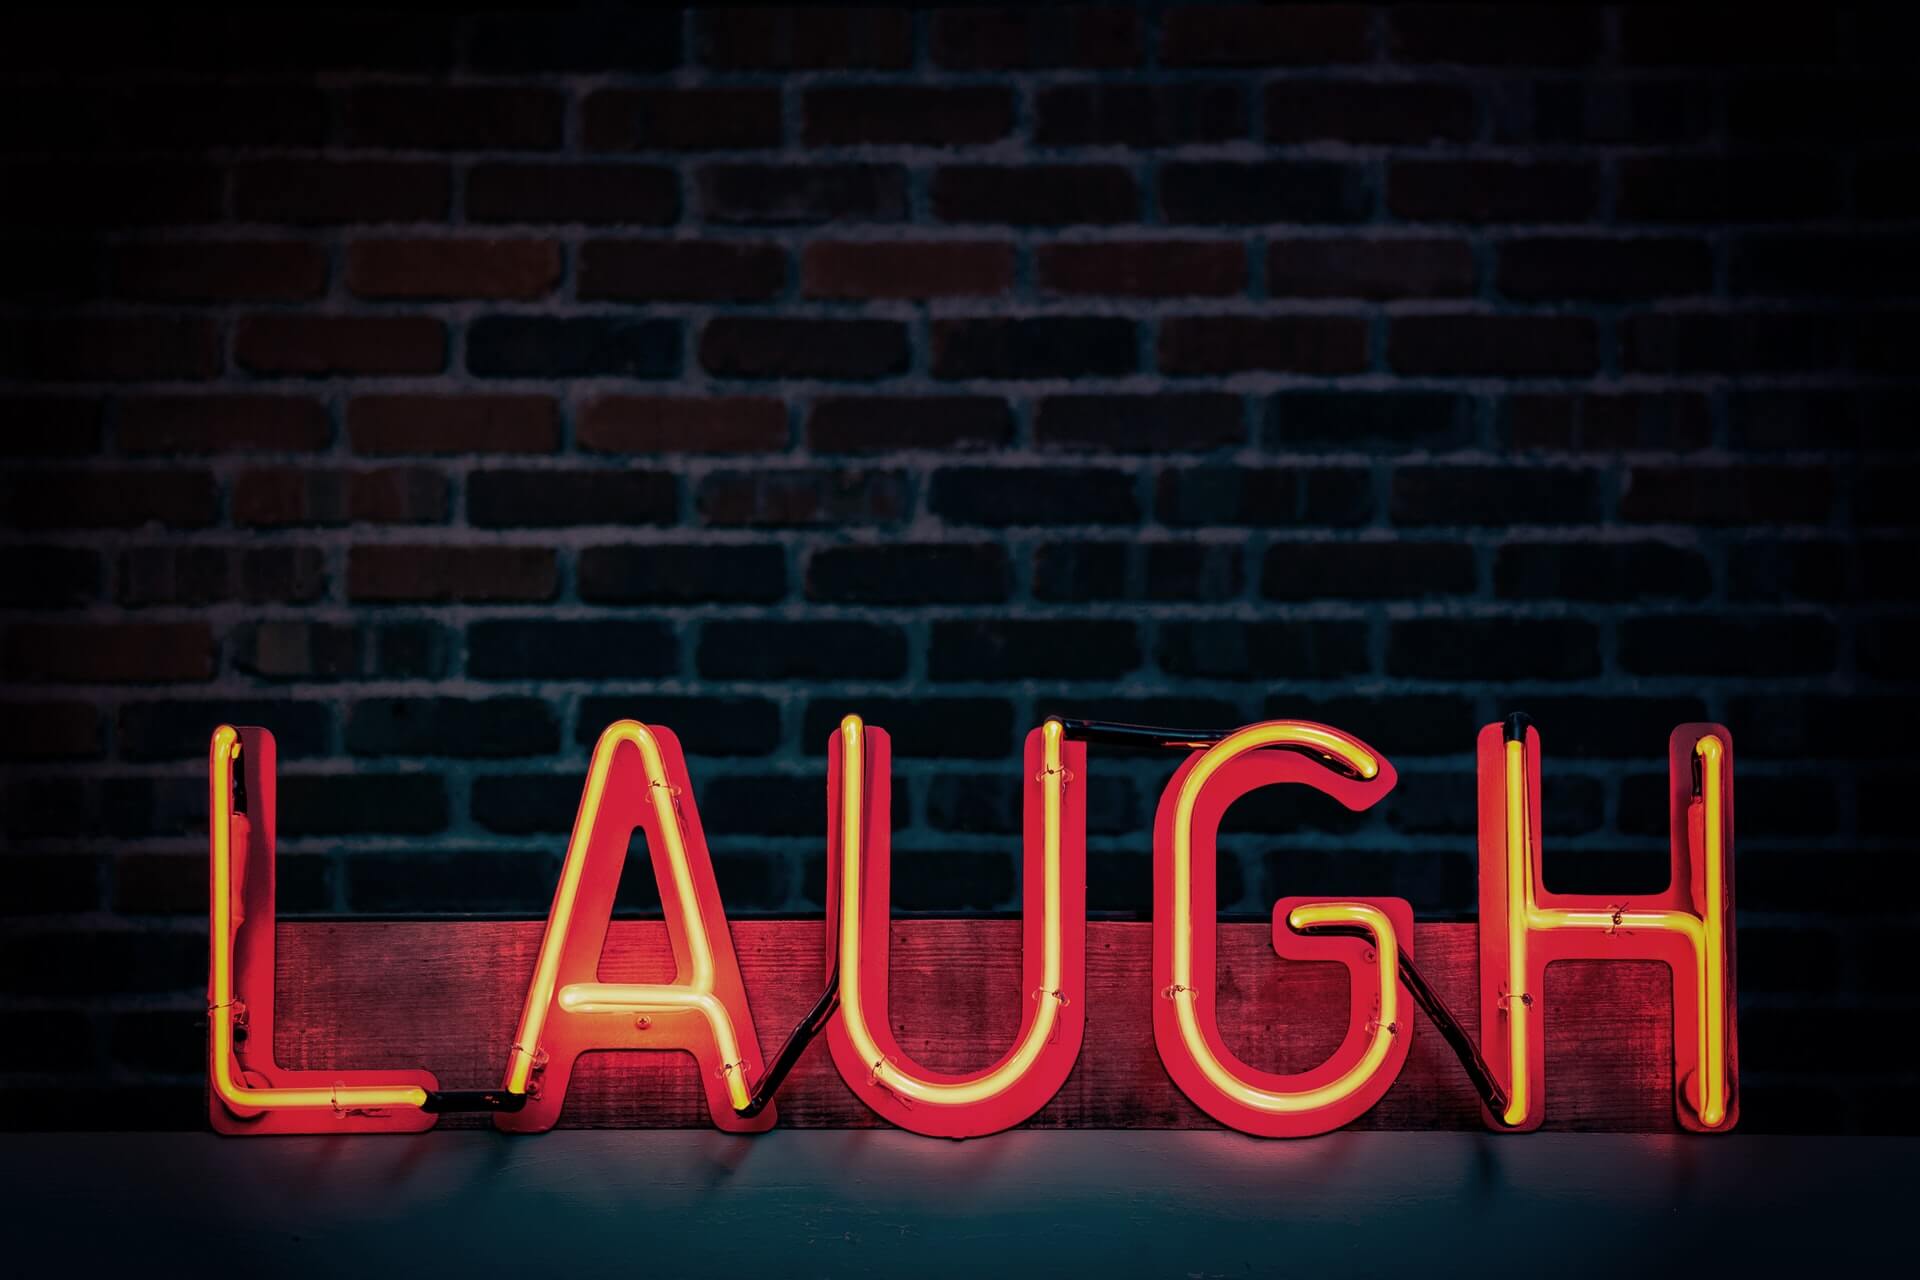 Escrita "laugh" em letra neon (risada em inglês)